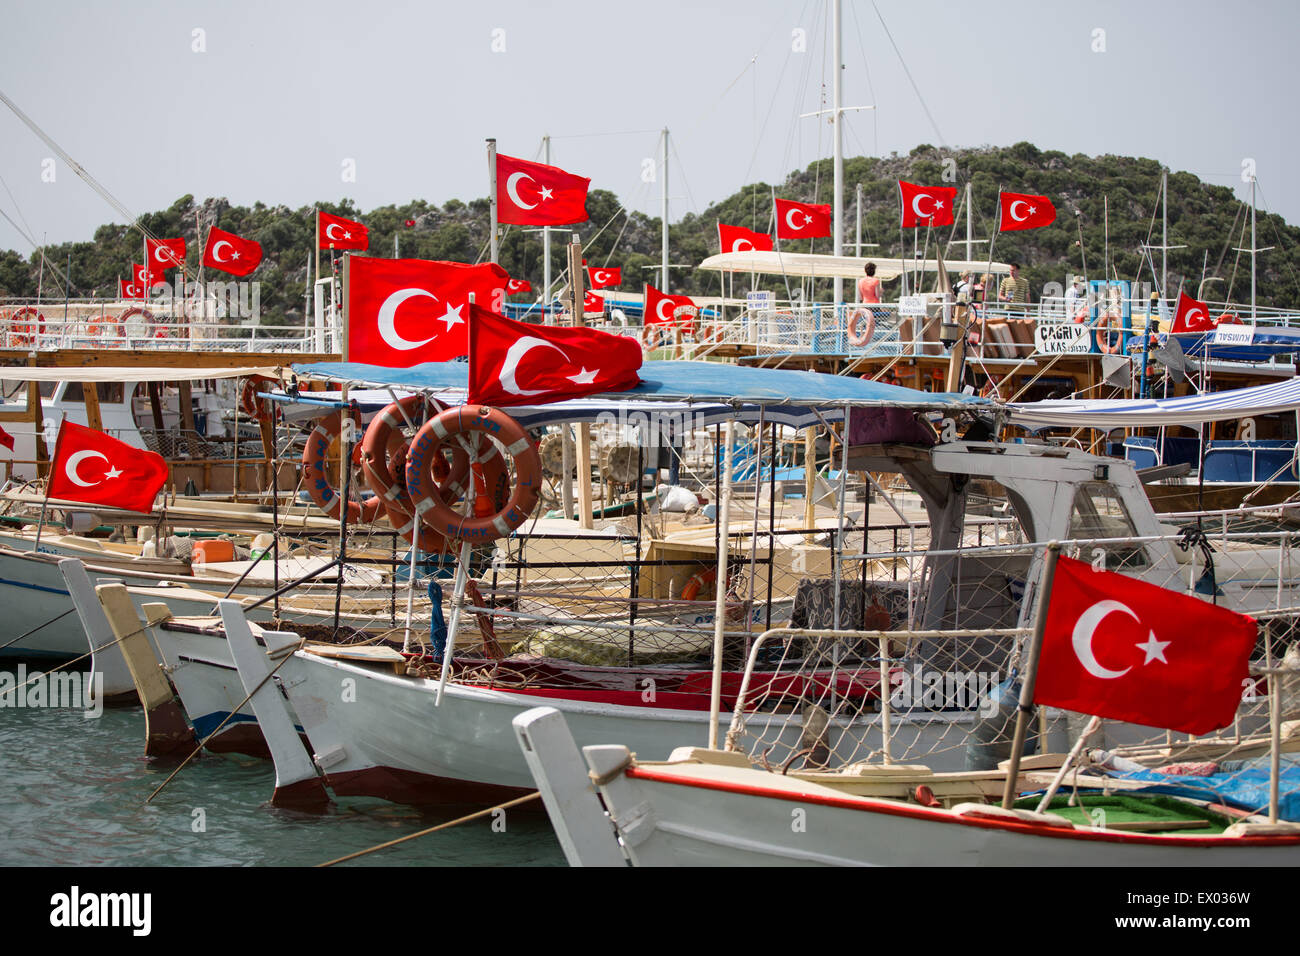 Porto imbarcazioni con bandiere turca, Kalekoy, Via Licia, Kalekoy, Demre, Simena, Turchia Foto Stock